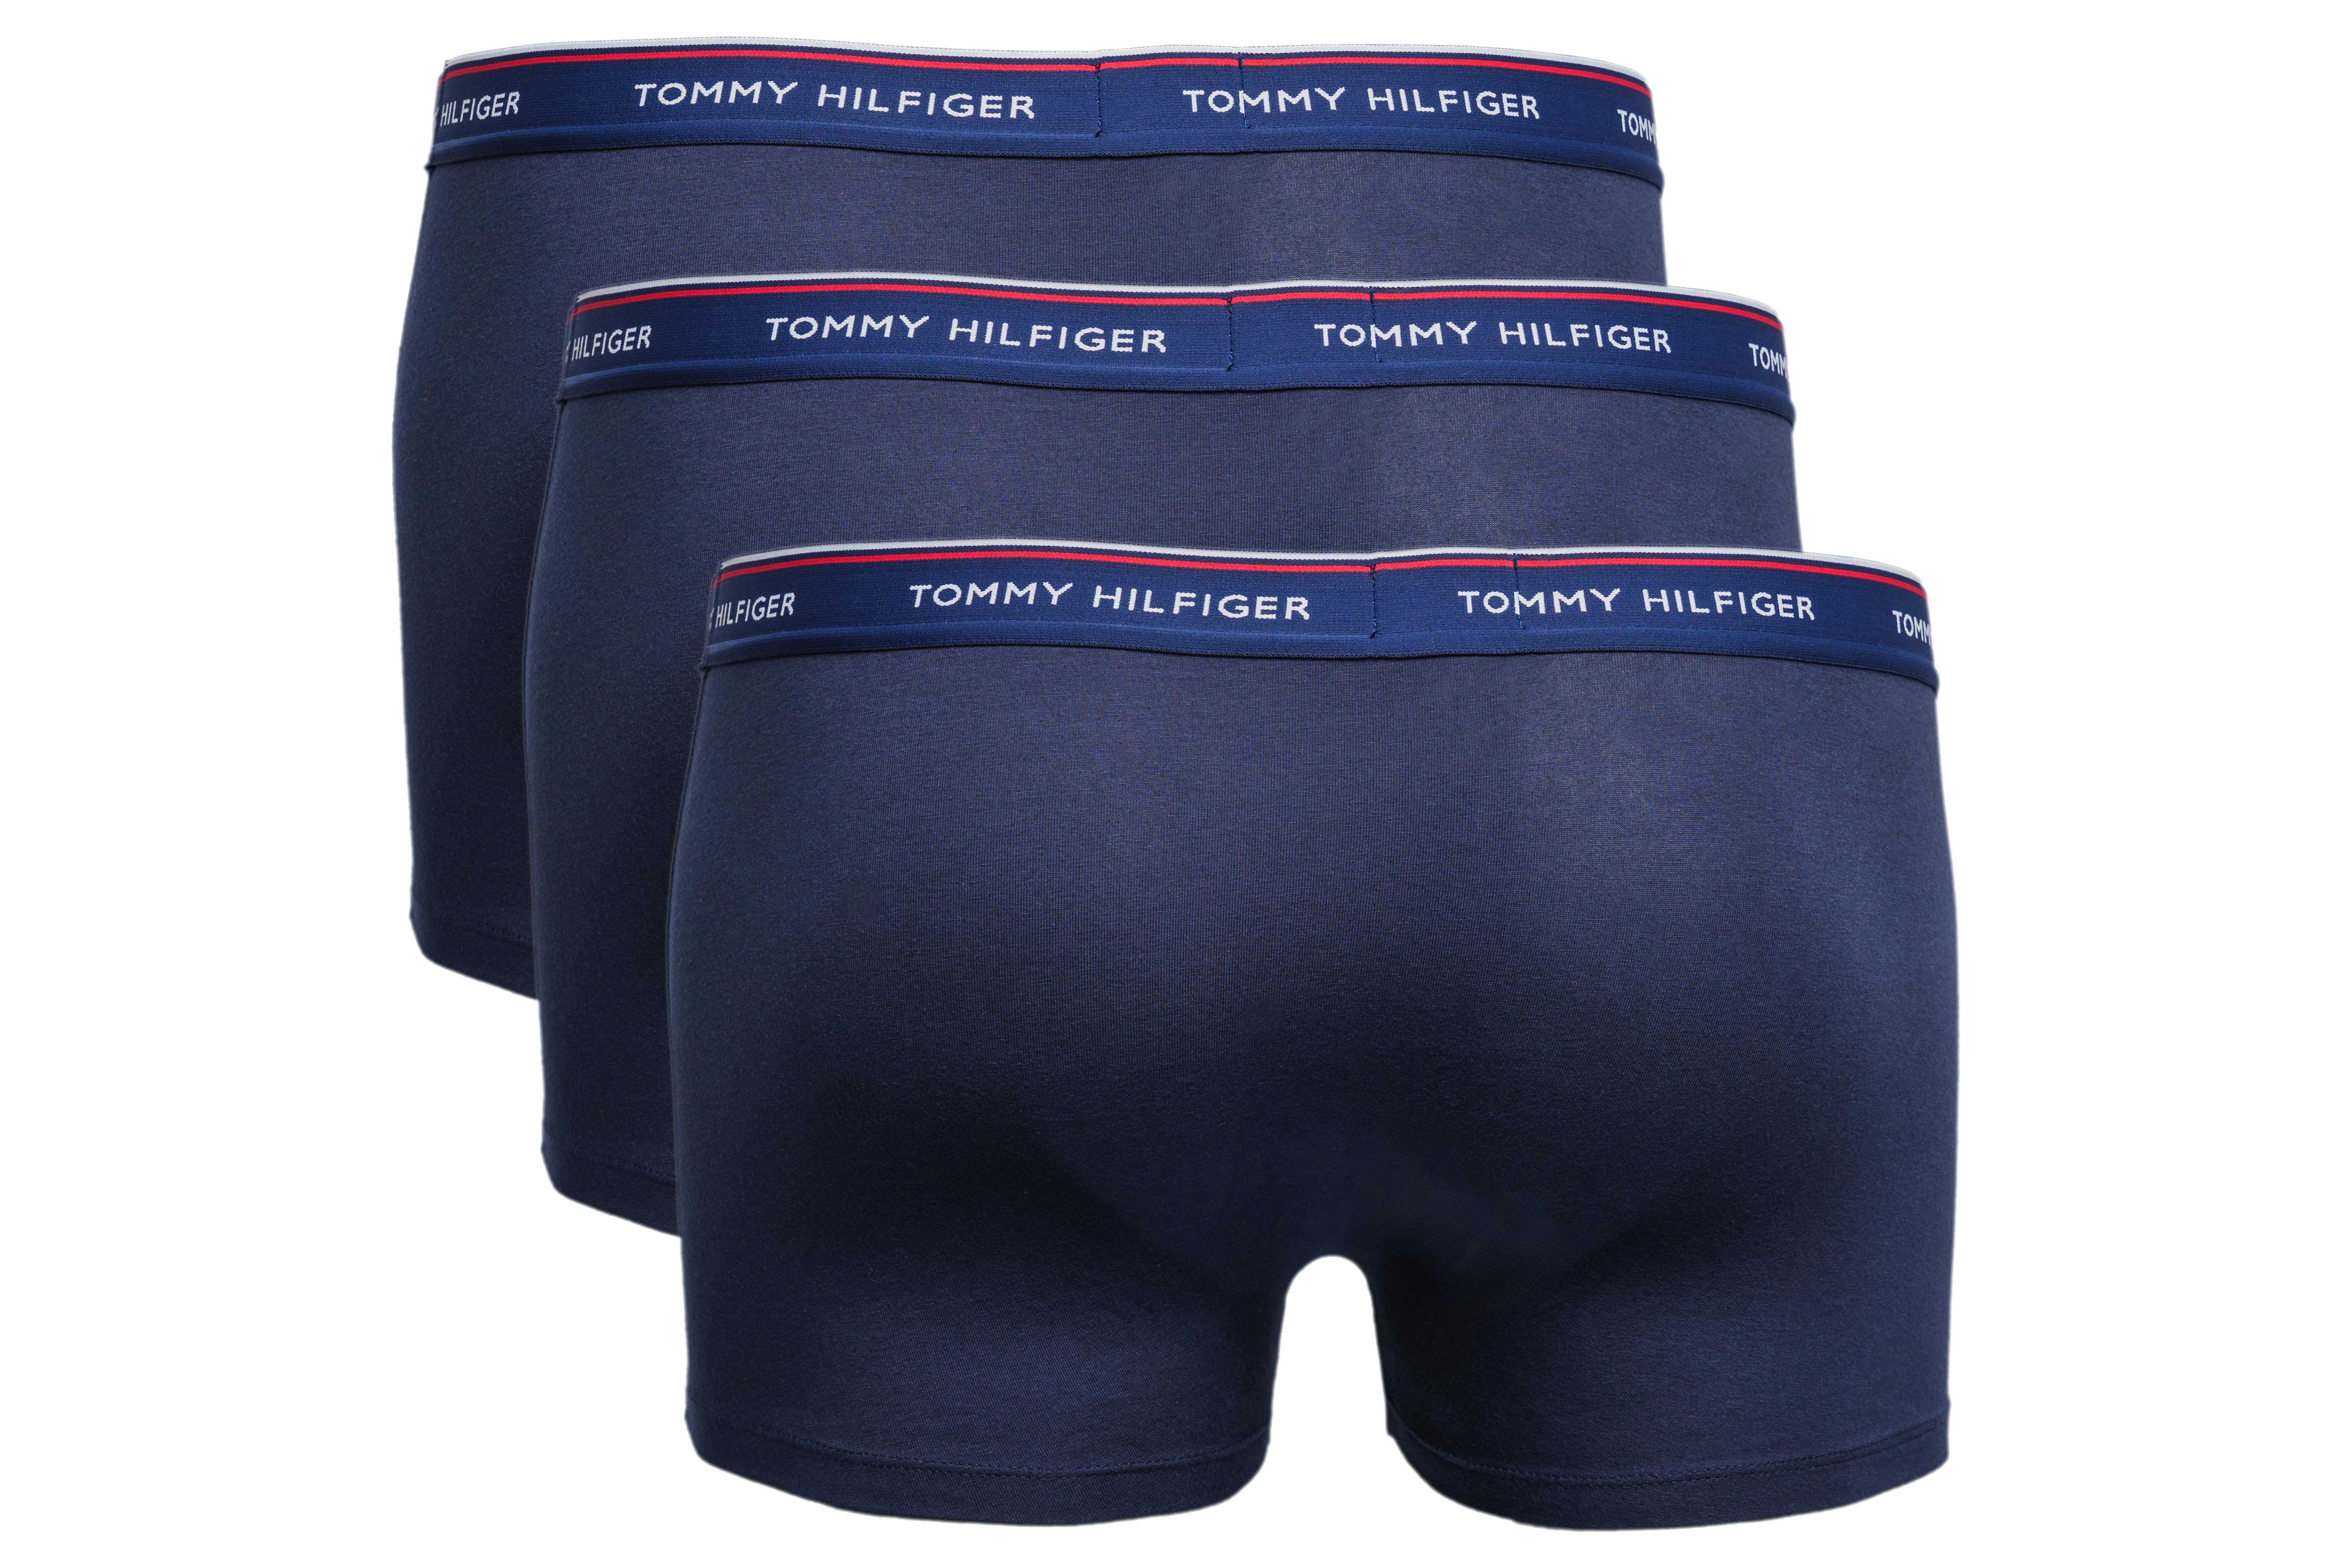 TOMMY HILFIGER 3er-Pack Boxershorts, Farbe dunkelblau, Größe S